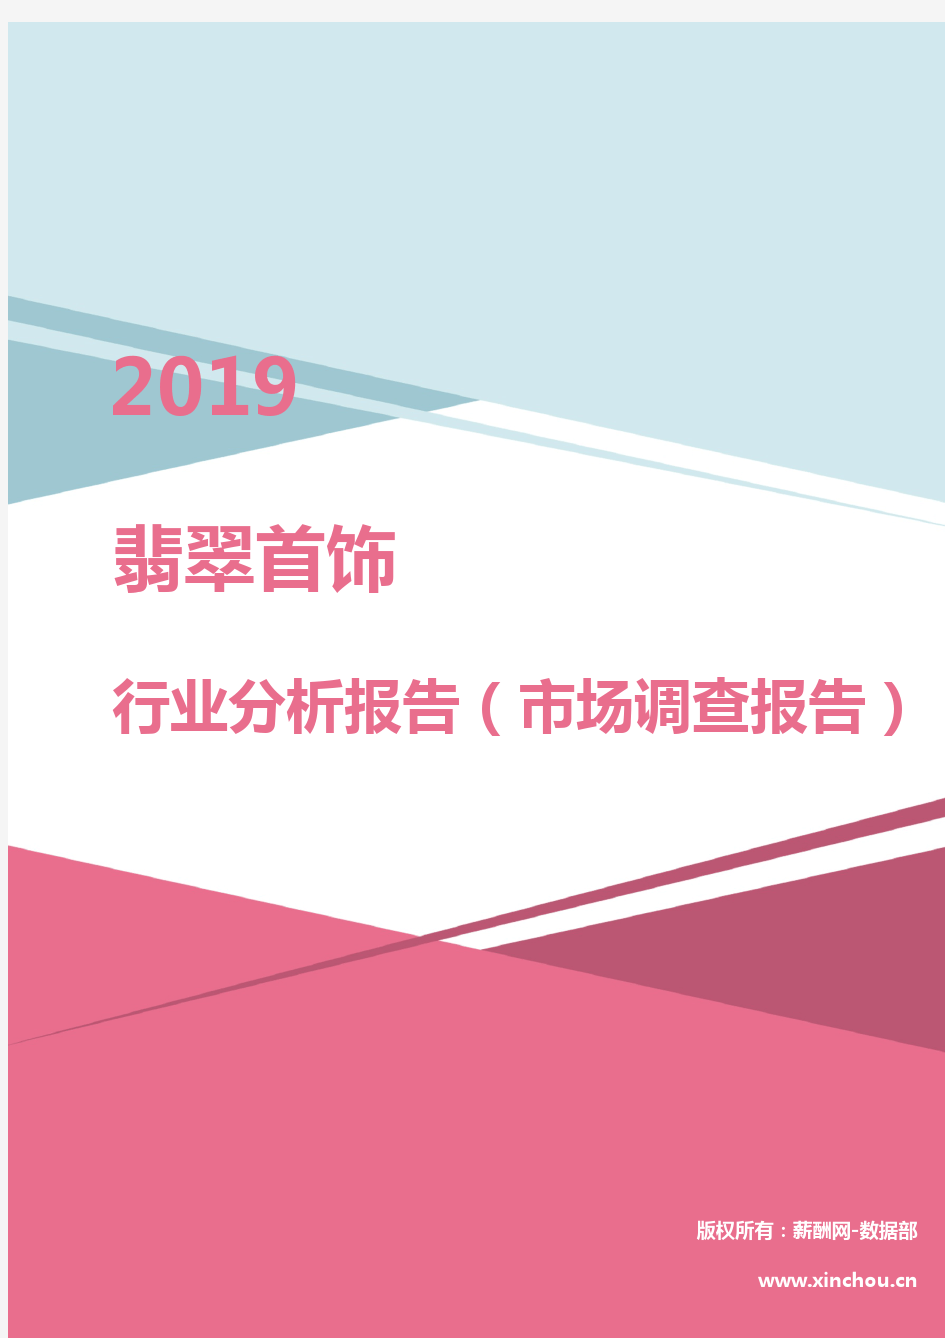 2019年翡翠首饰行业分析报告(市场调查报告)